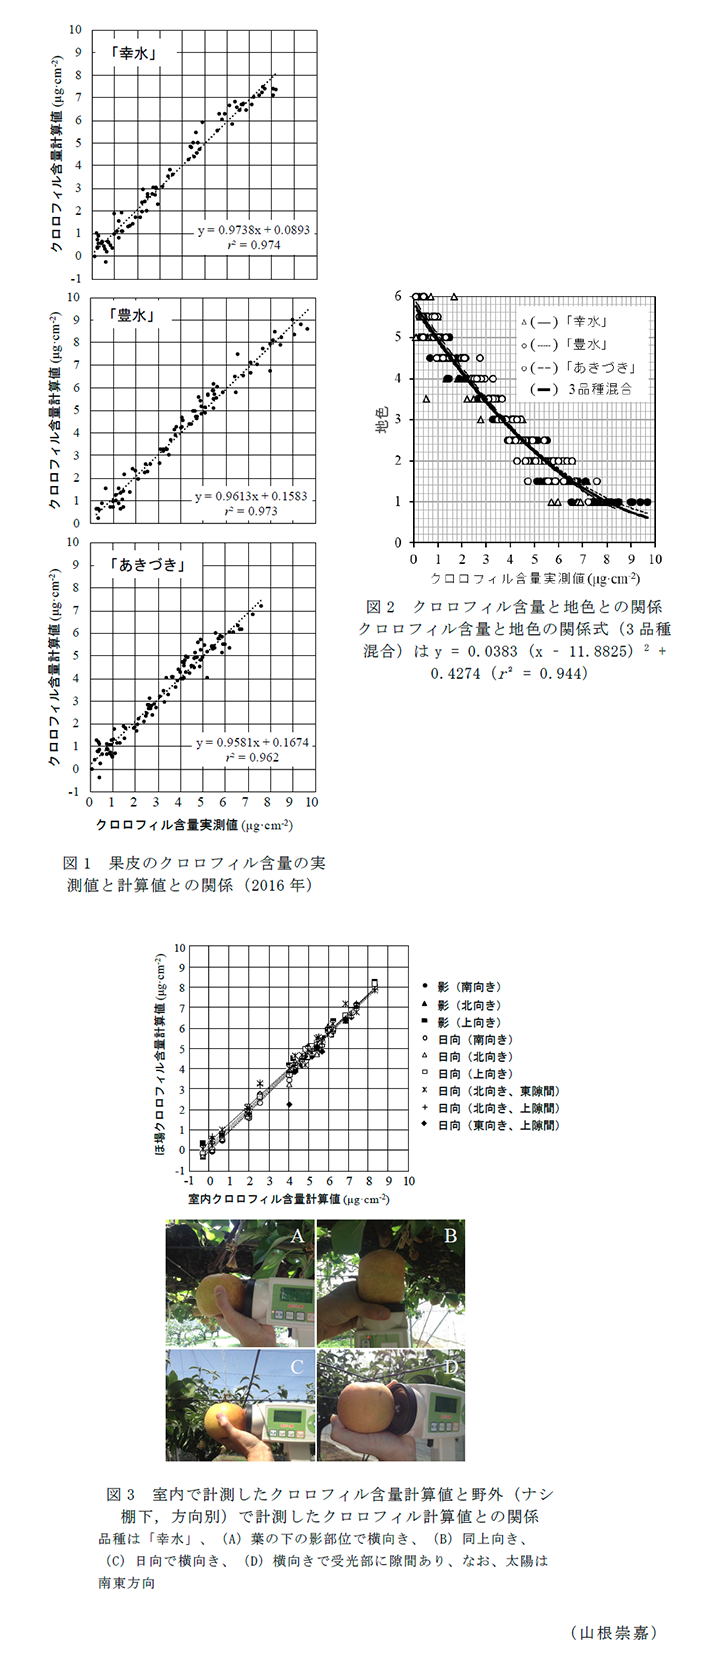 図1 果皮のクロロフィル含量の実測値と計算値との関係(2016年),図2 クロロフィル含量と地色との関係,図3 室内で計測したクロロフィル含量計算値と野外(ナシ棚下,方向別)で計測したクロロフィル計算値との関係